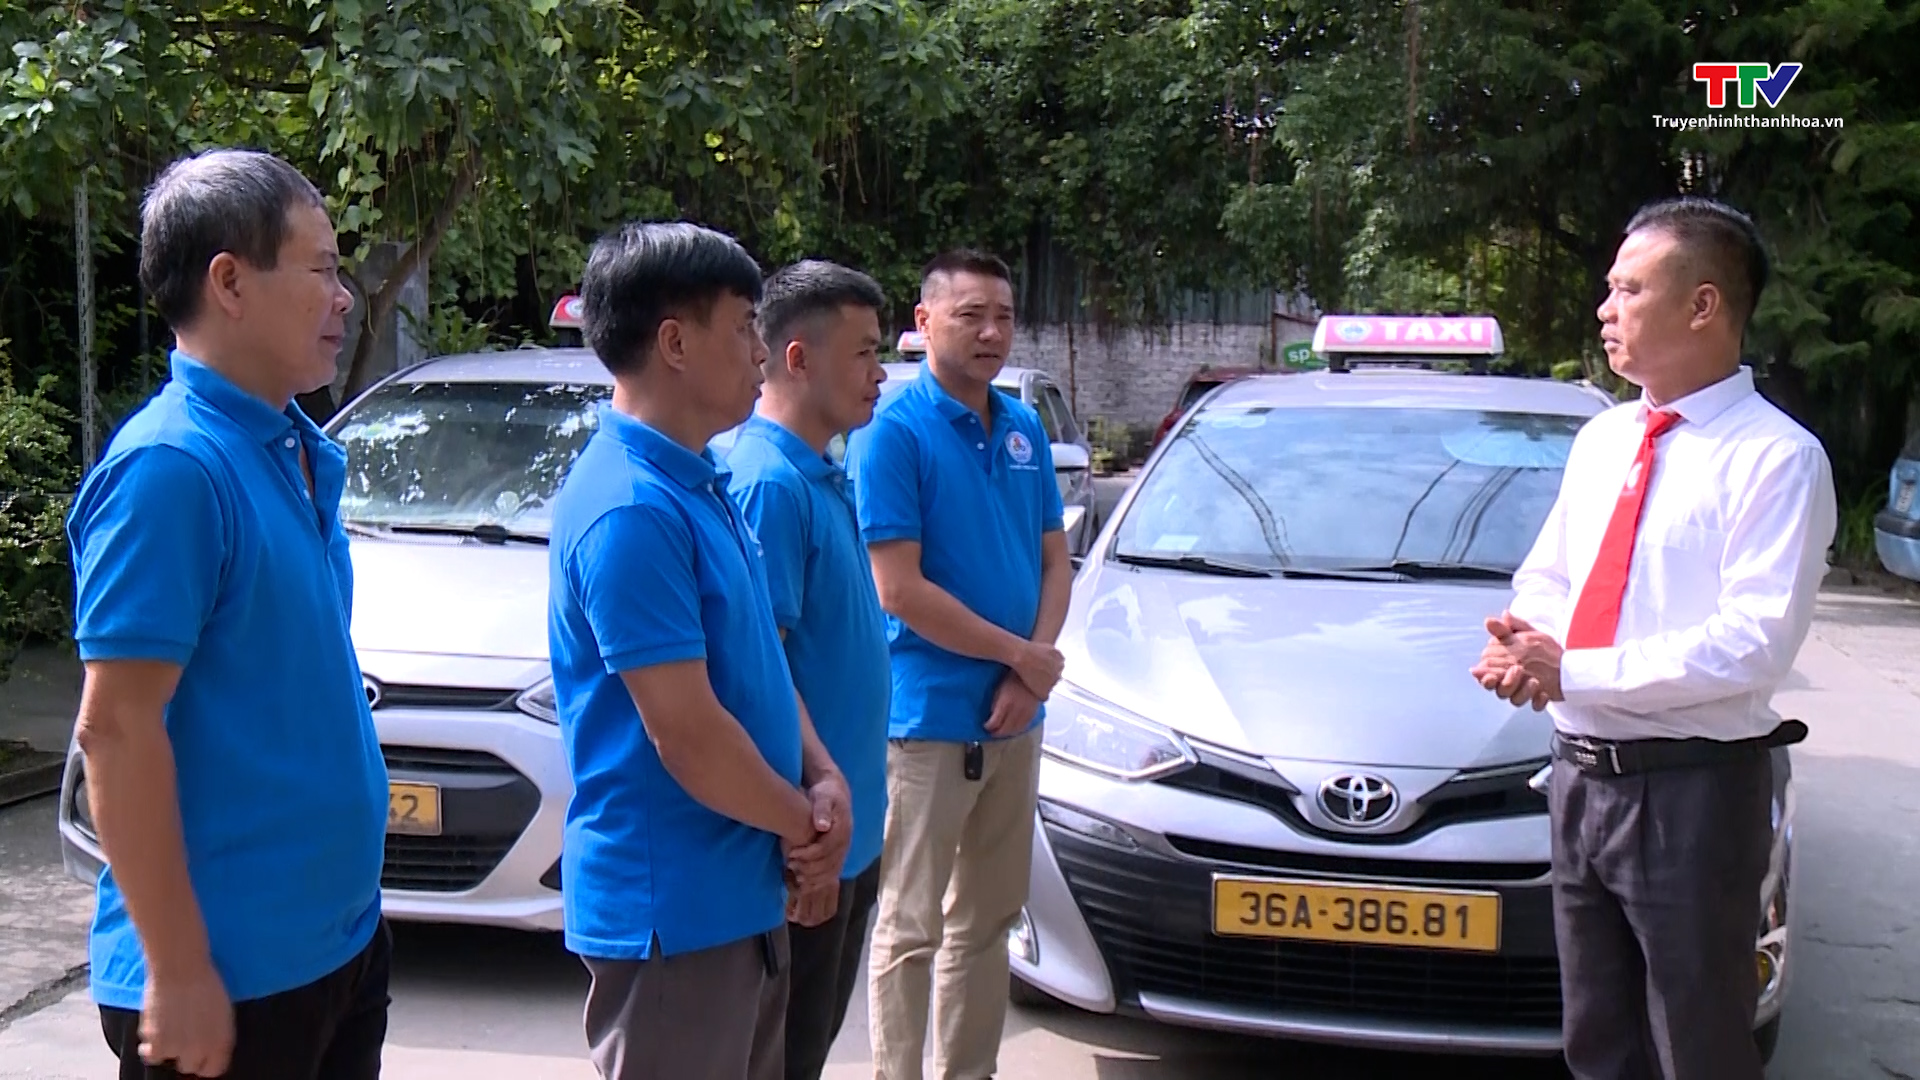 Các doanh nghiệp Taxi chuẩn bị phương án phục vụ hành khách dịp nghỉ lễ Quốc Khánh 2/9 - Ảnh 2.